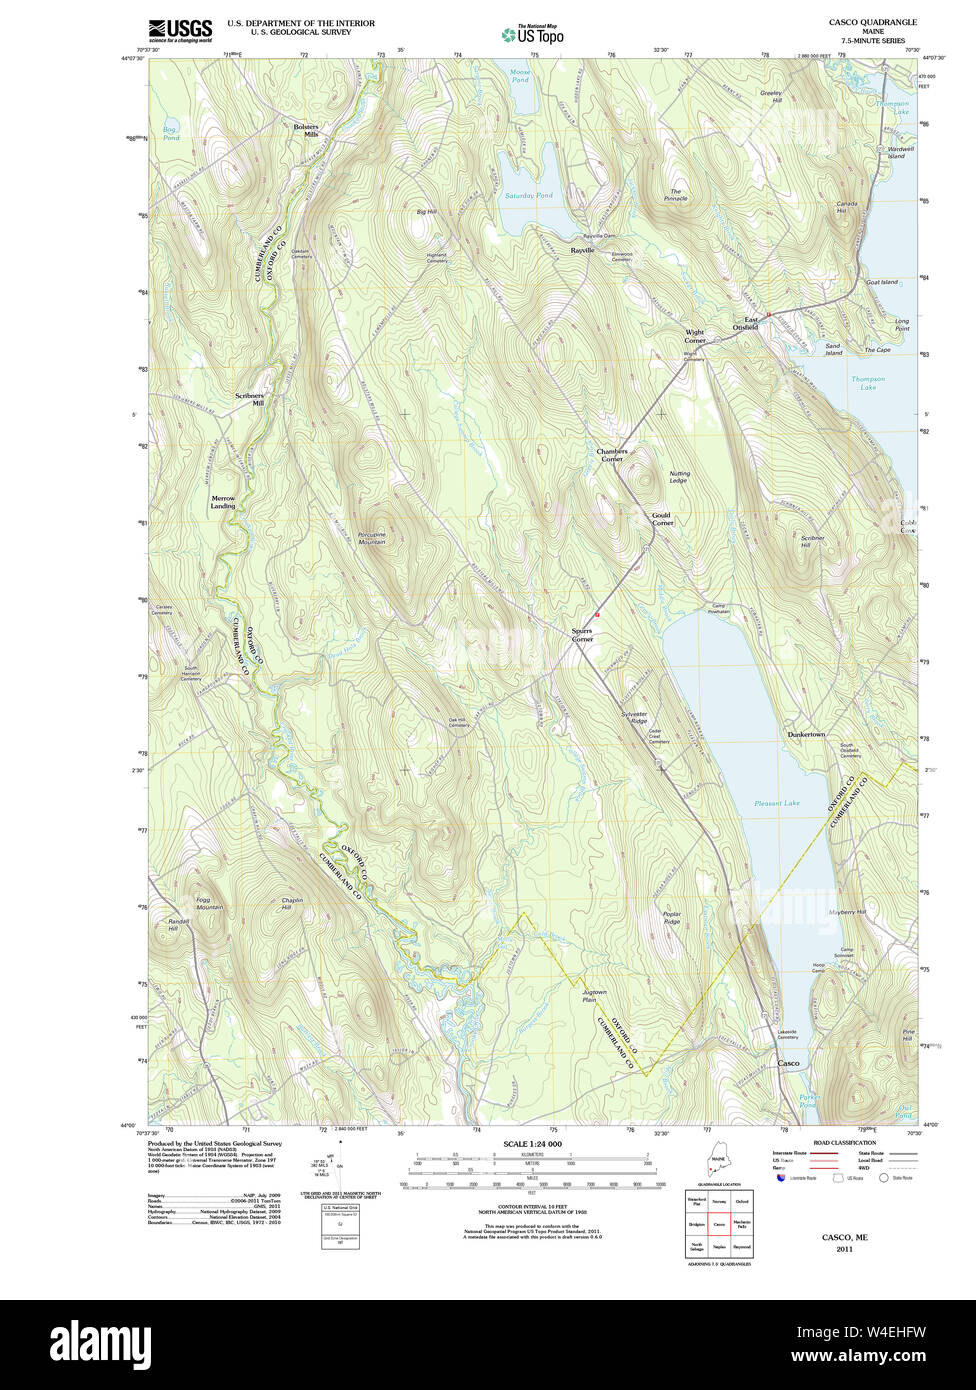 Maine Usgs Historical Map Casco 20110829 Tm Restoration W4EHFW 